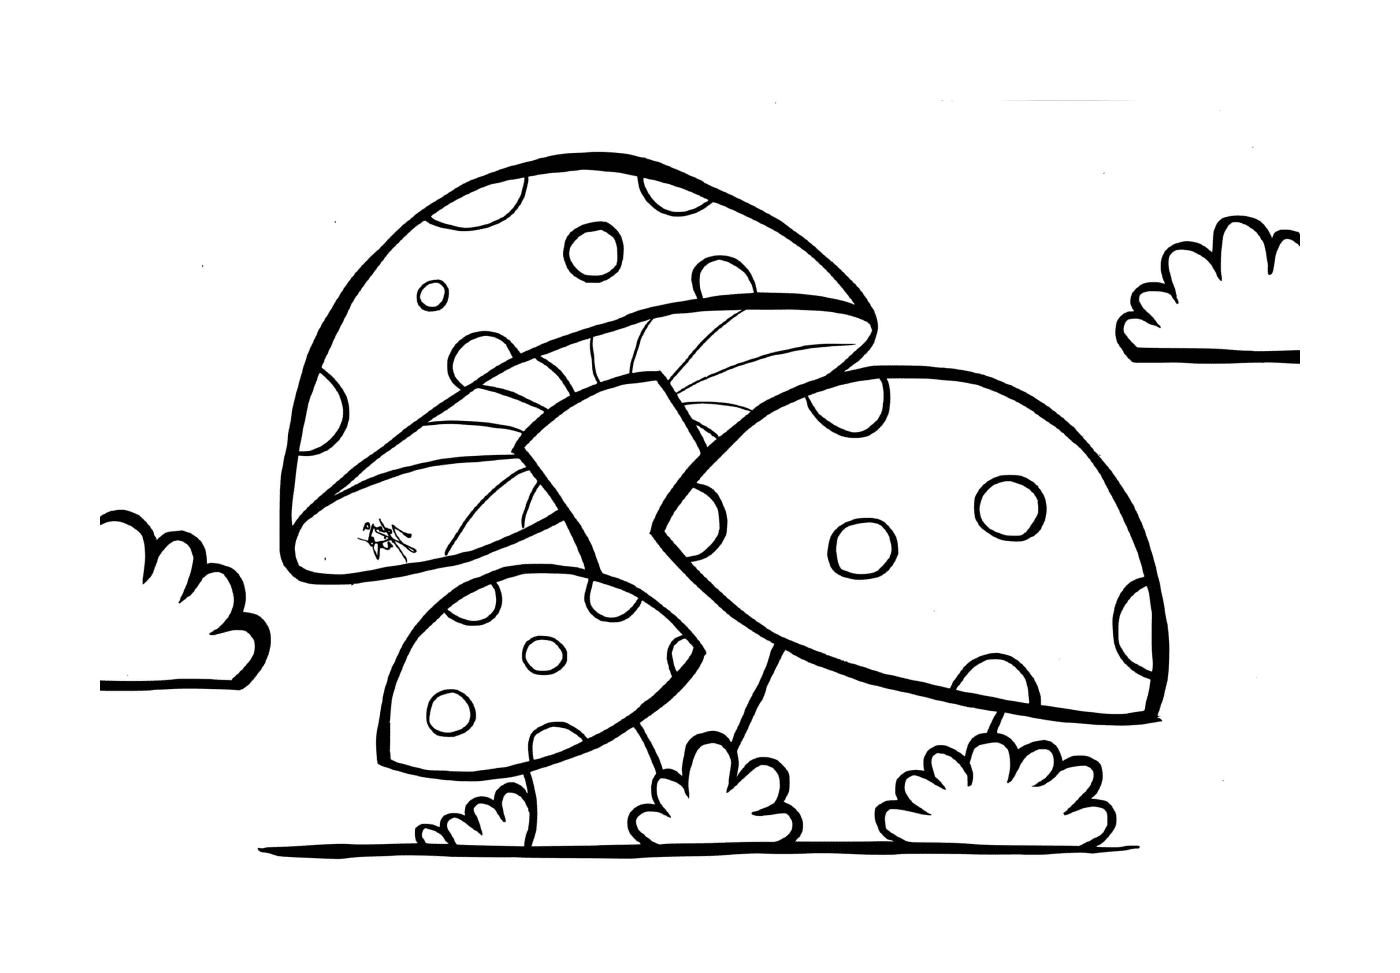  配有豆的蘑菇 